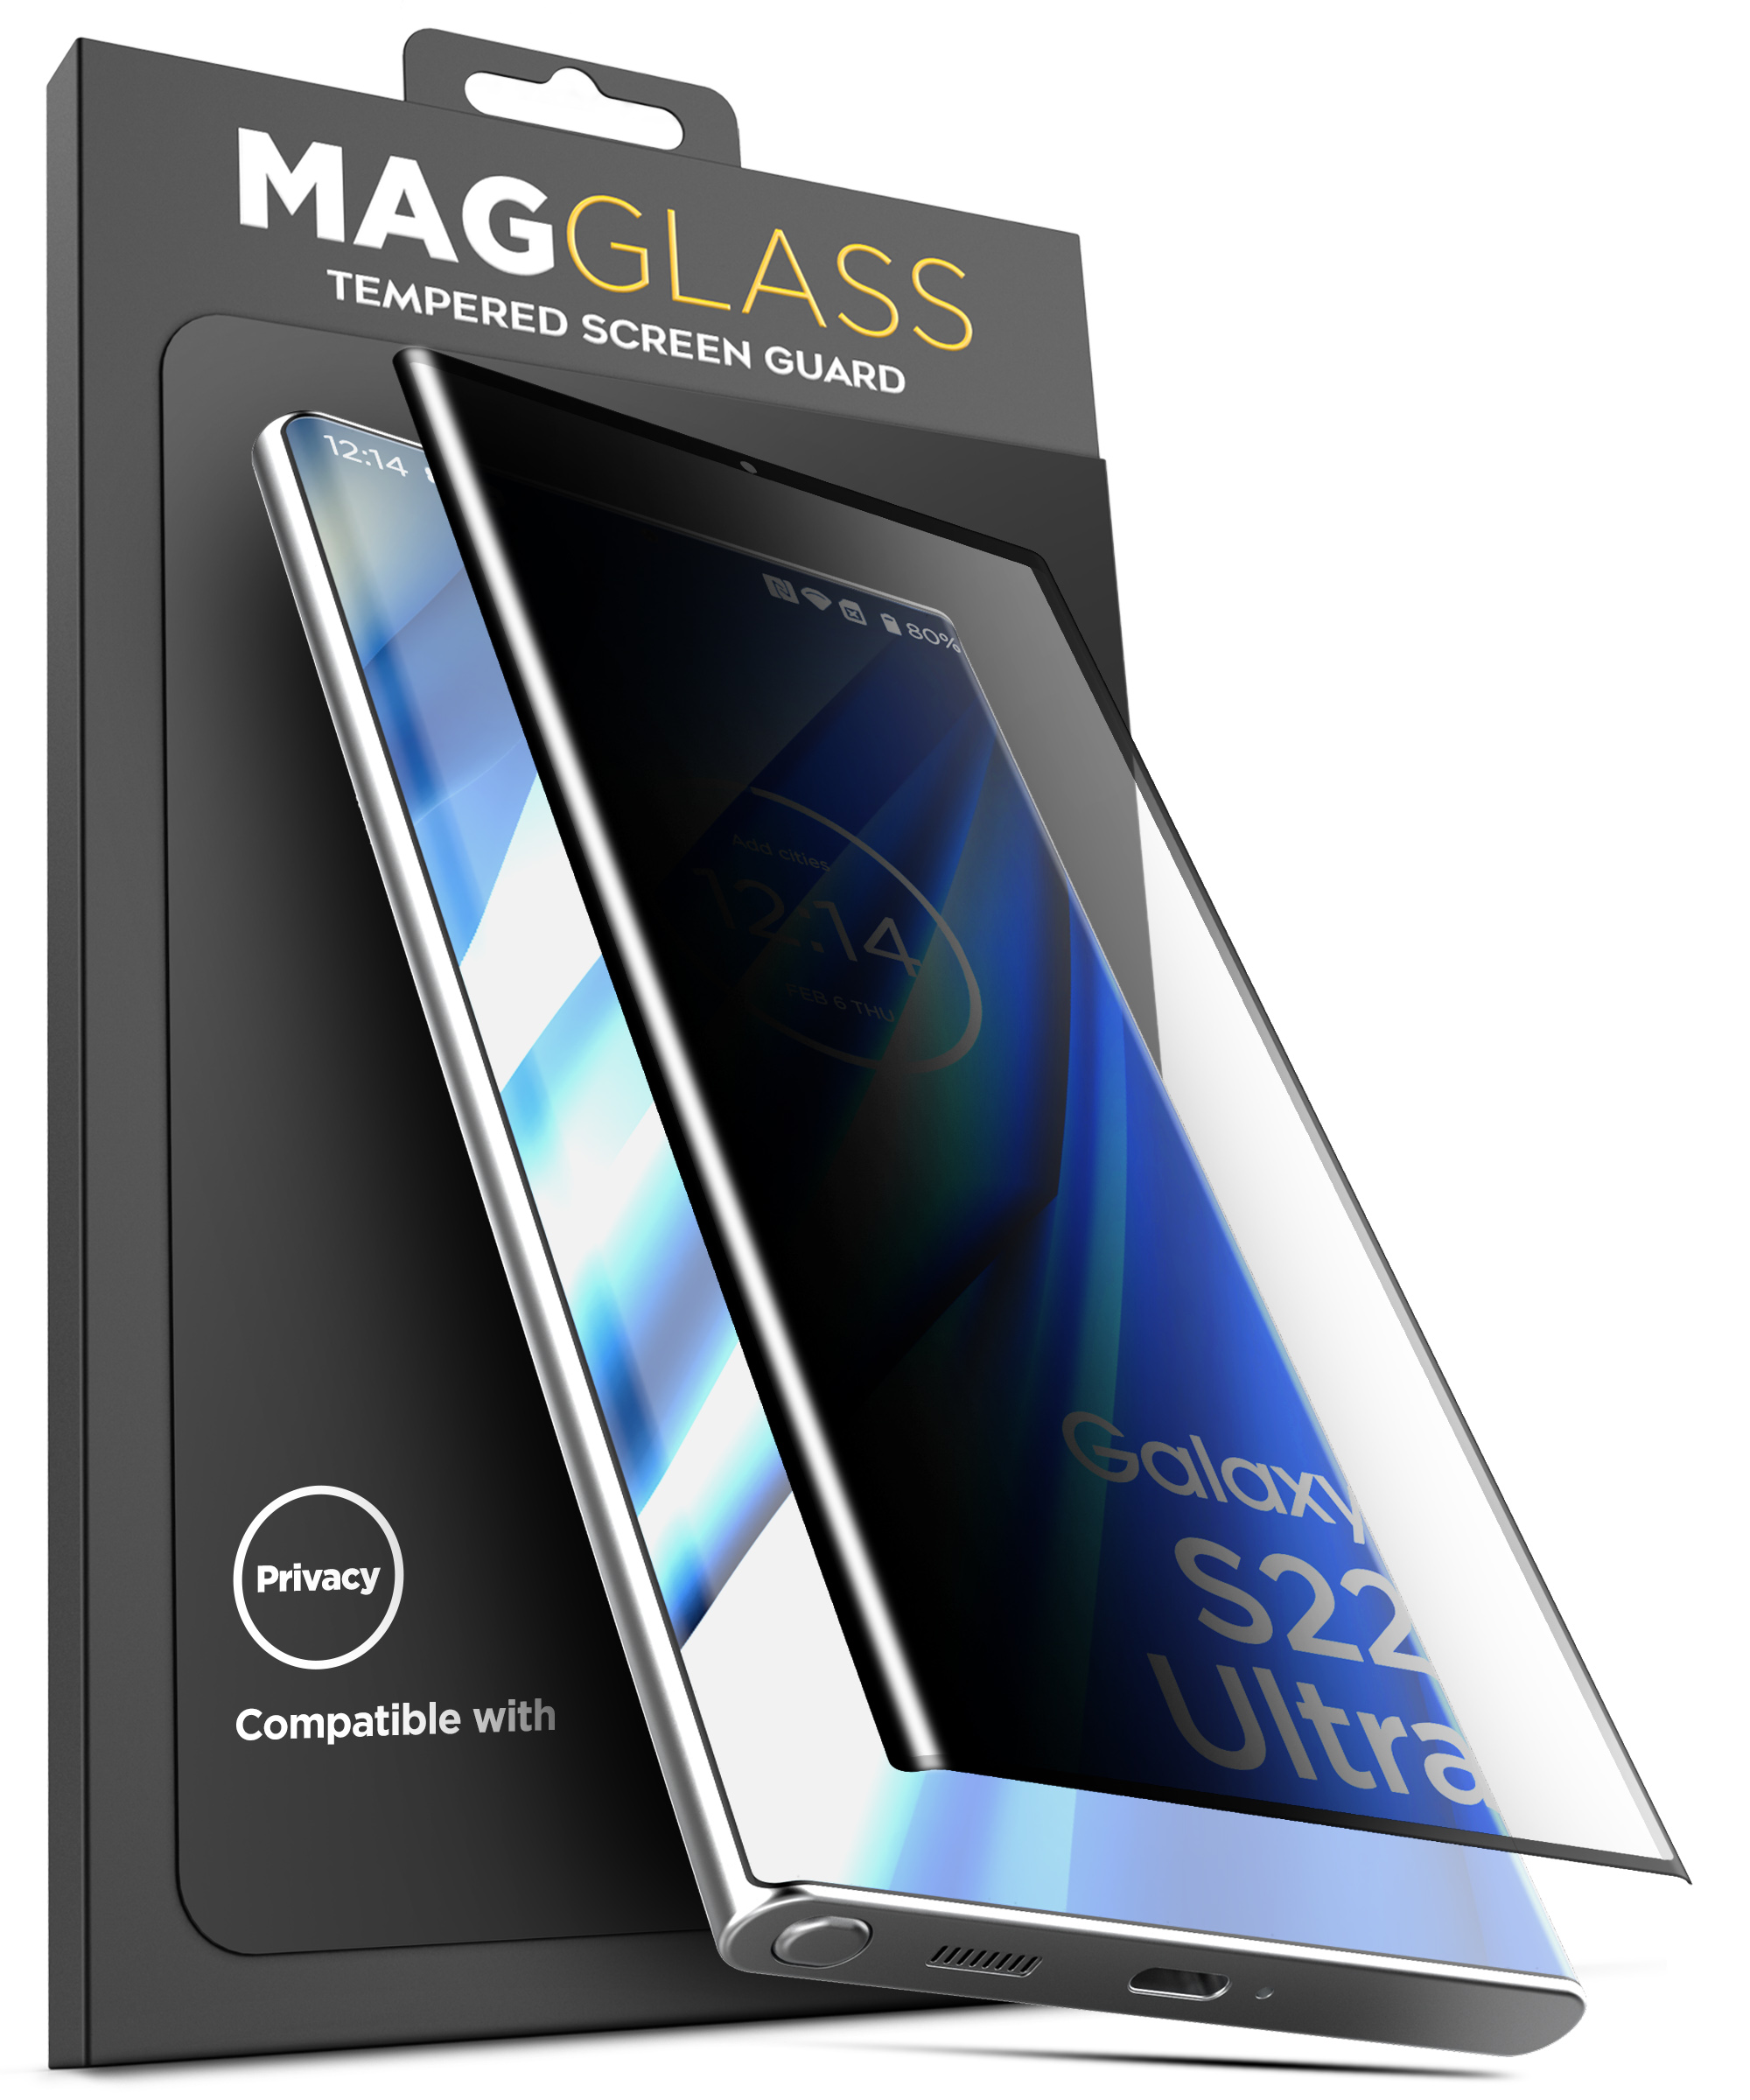 upscreen Spy Shield Clear Premium Film de protection d'écran confidentiel  pour Samsung Galaxy S22 5G